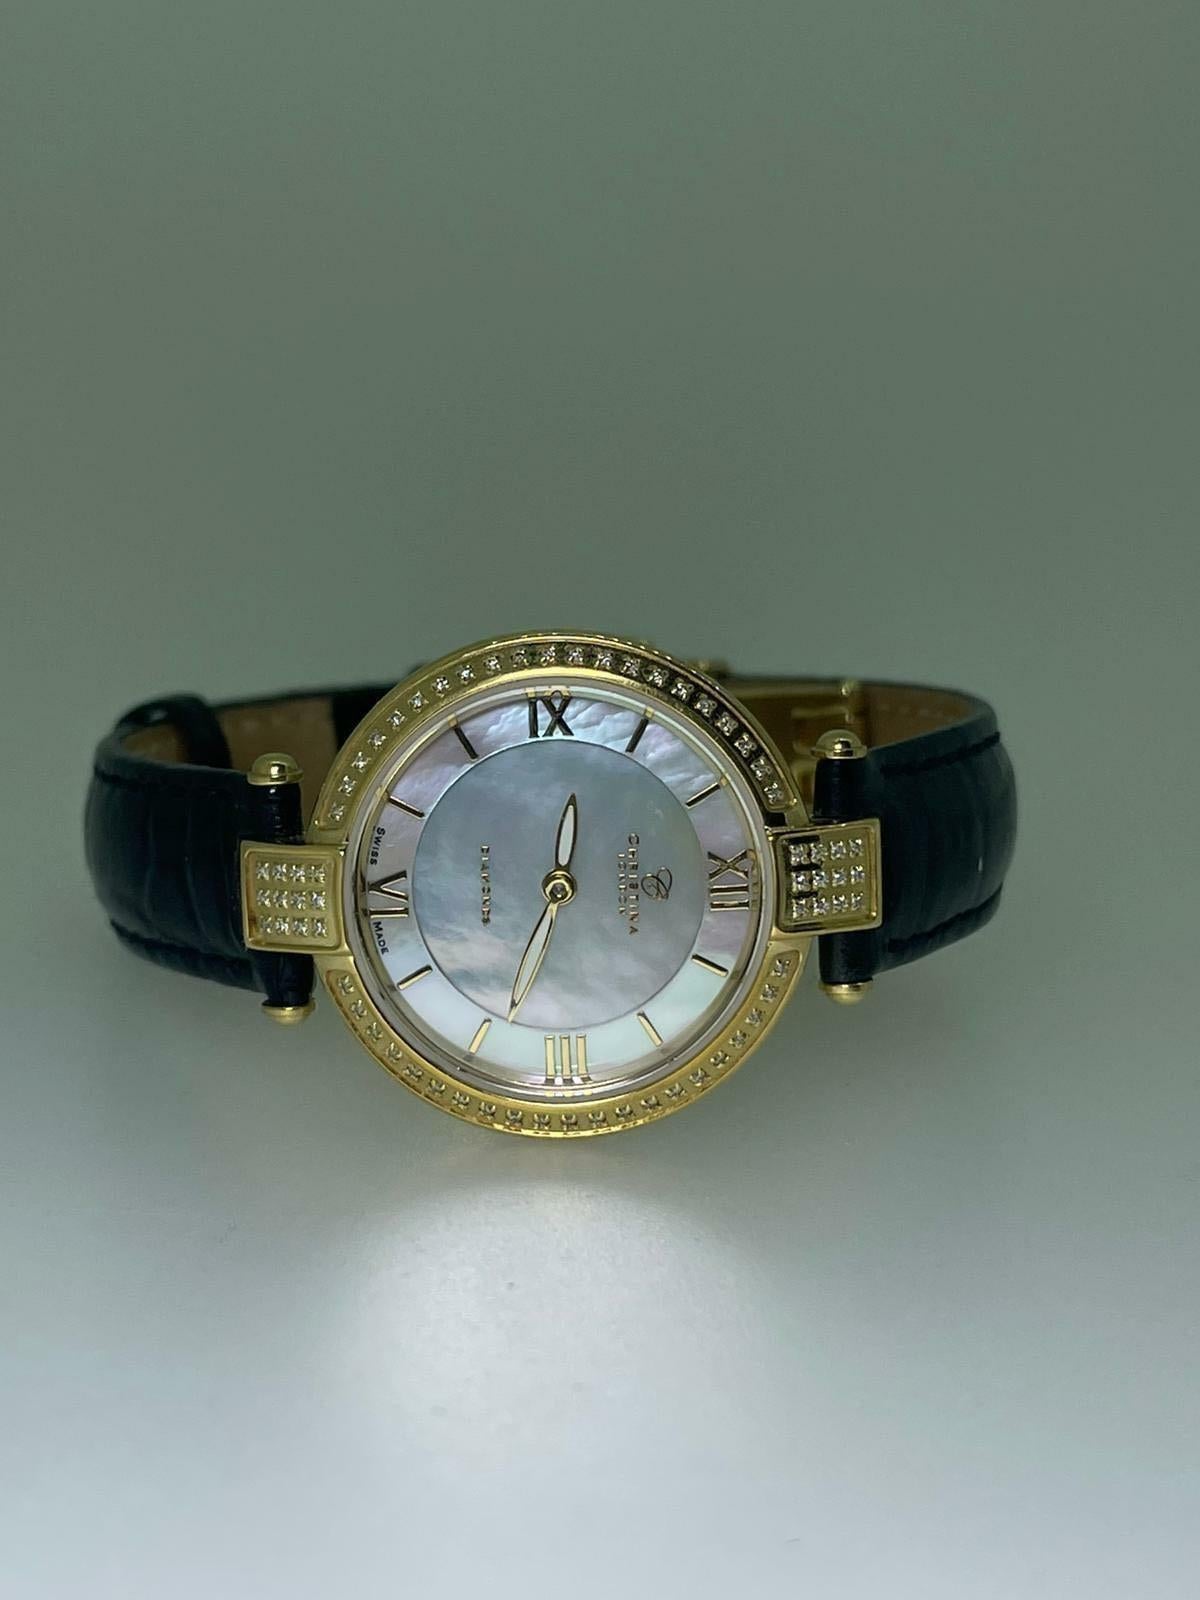 Fabelhaft entworfen von Christina Hembo - einer bekannten dänischen Schmuck- und Uhrendesignerin 
von CHRISTINA Design London, 

Diese Armbanduhr hat ein rundes, 18 Karat vergoldetes Gehäuse von 27 mm Durchmesser,
mit Lünette und Bandanstößen, die